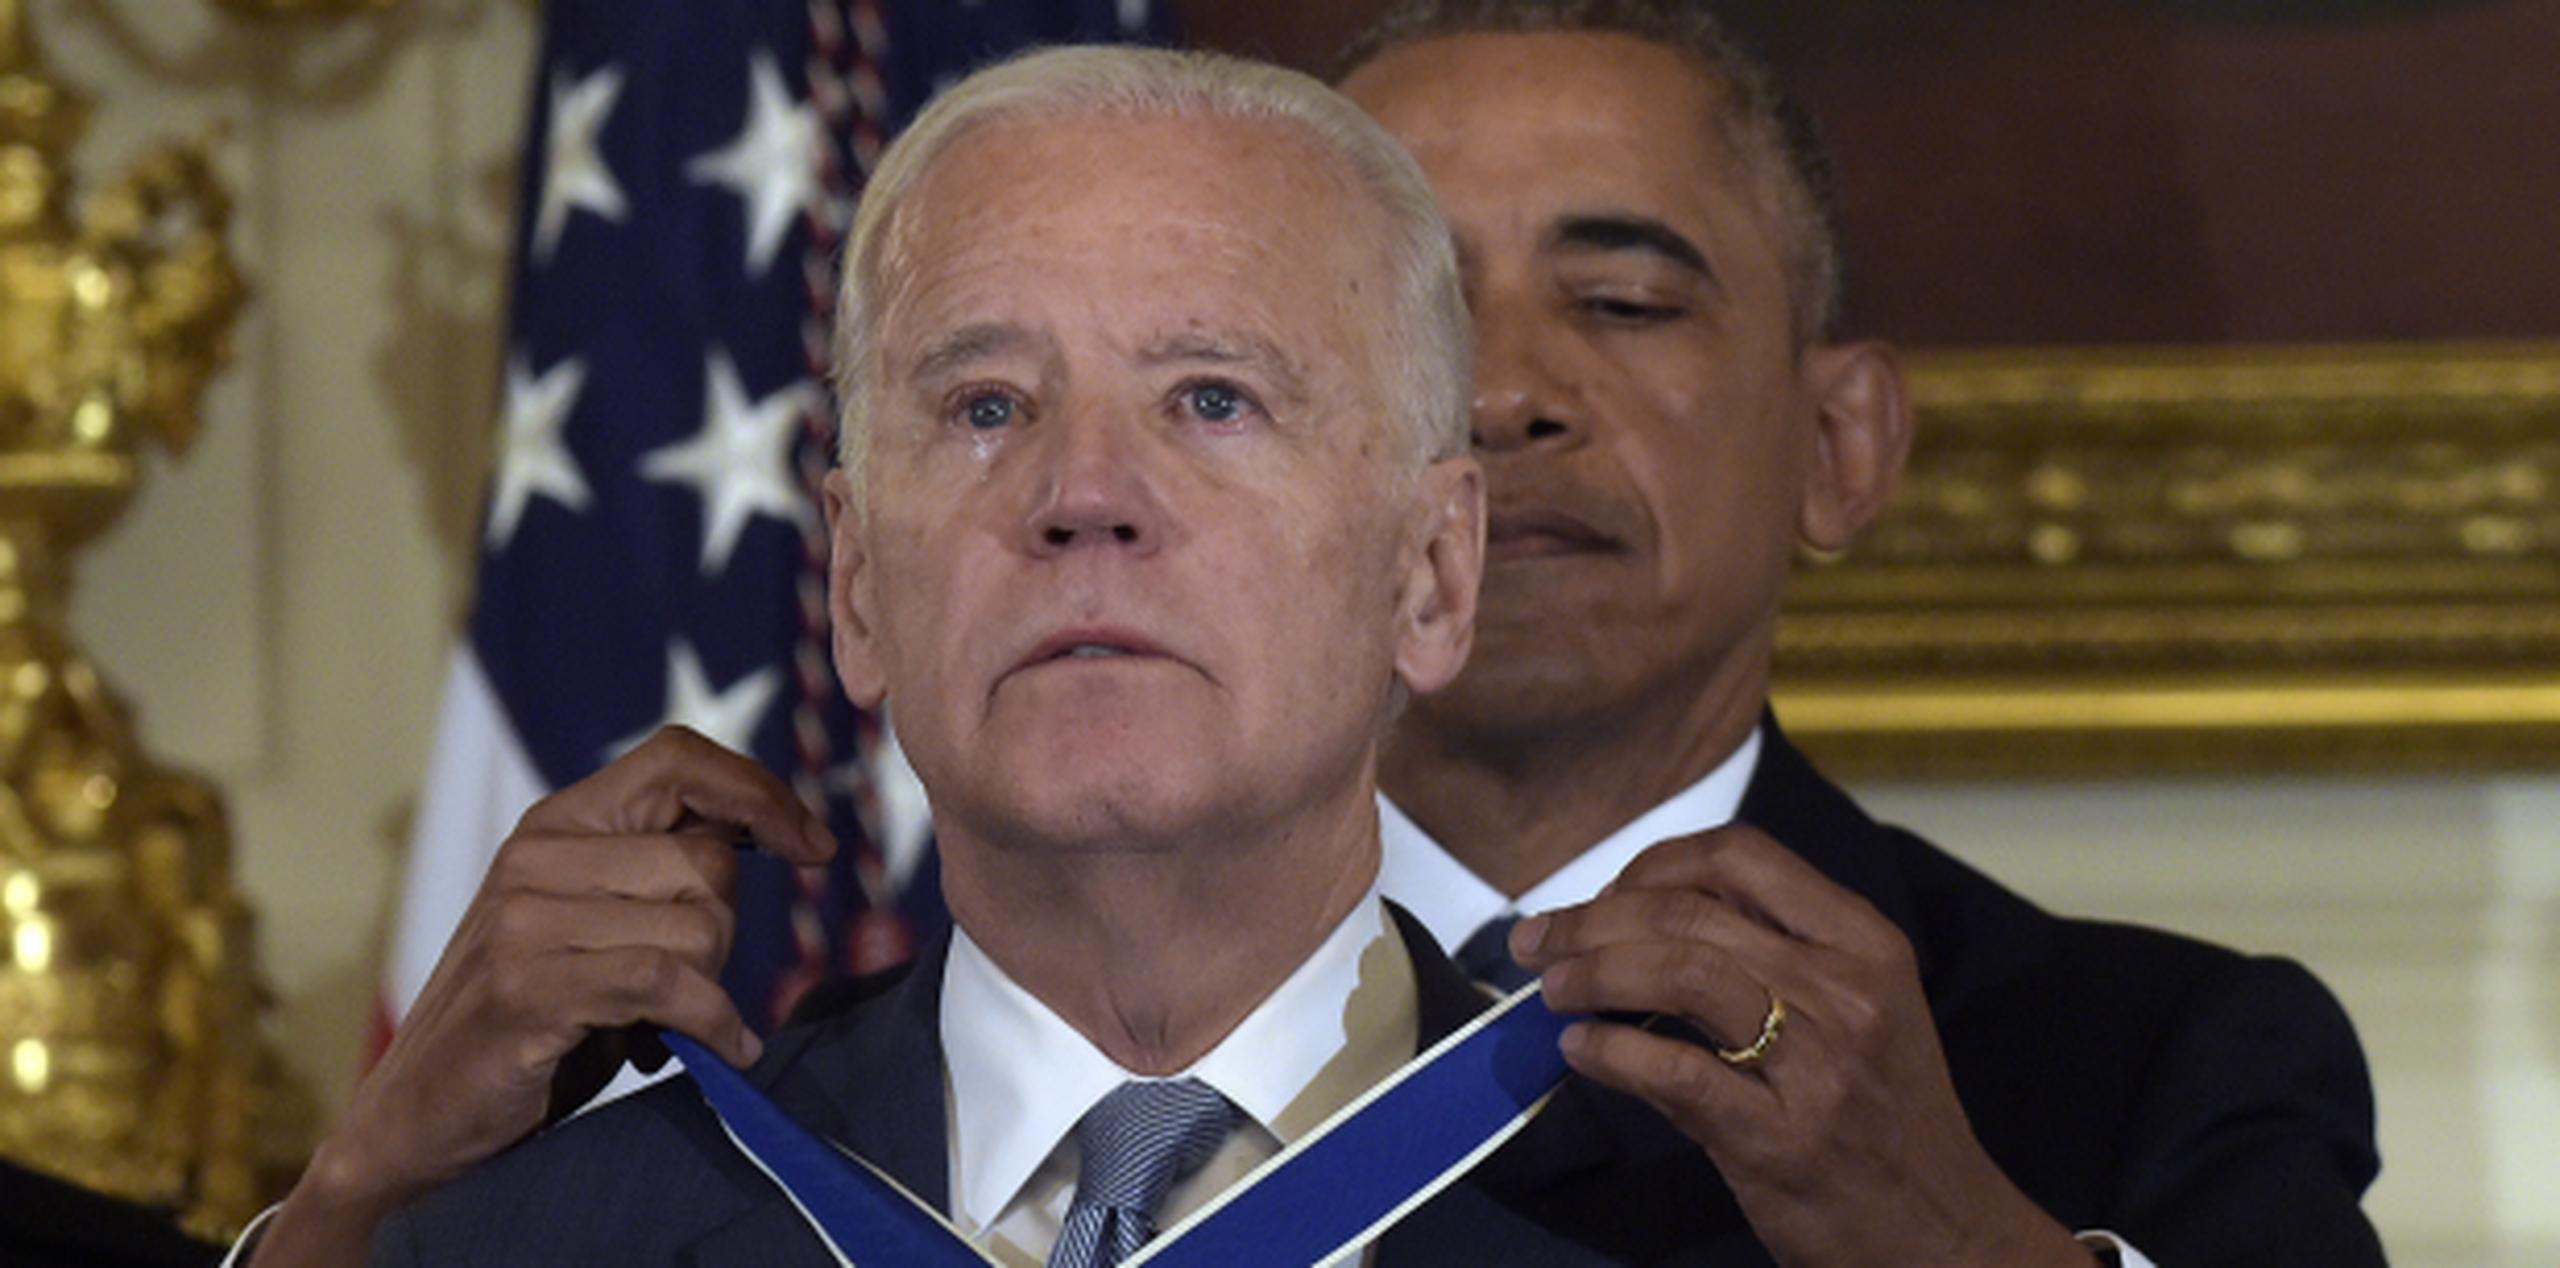 Biden no aguantó derramar lágrimas mientras recibía el honor. (Prensa Asociada)